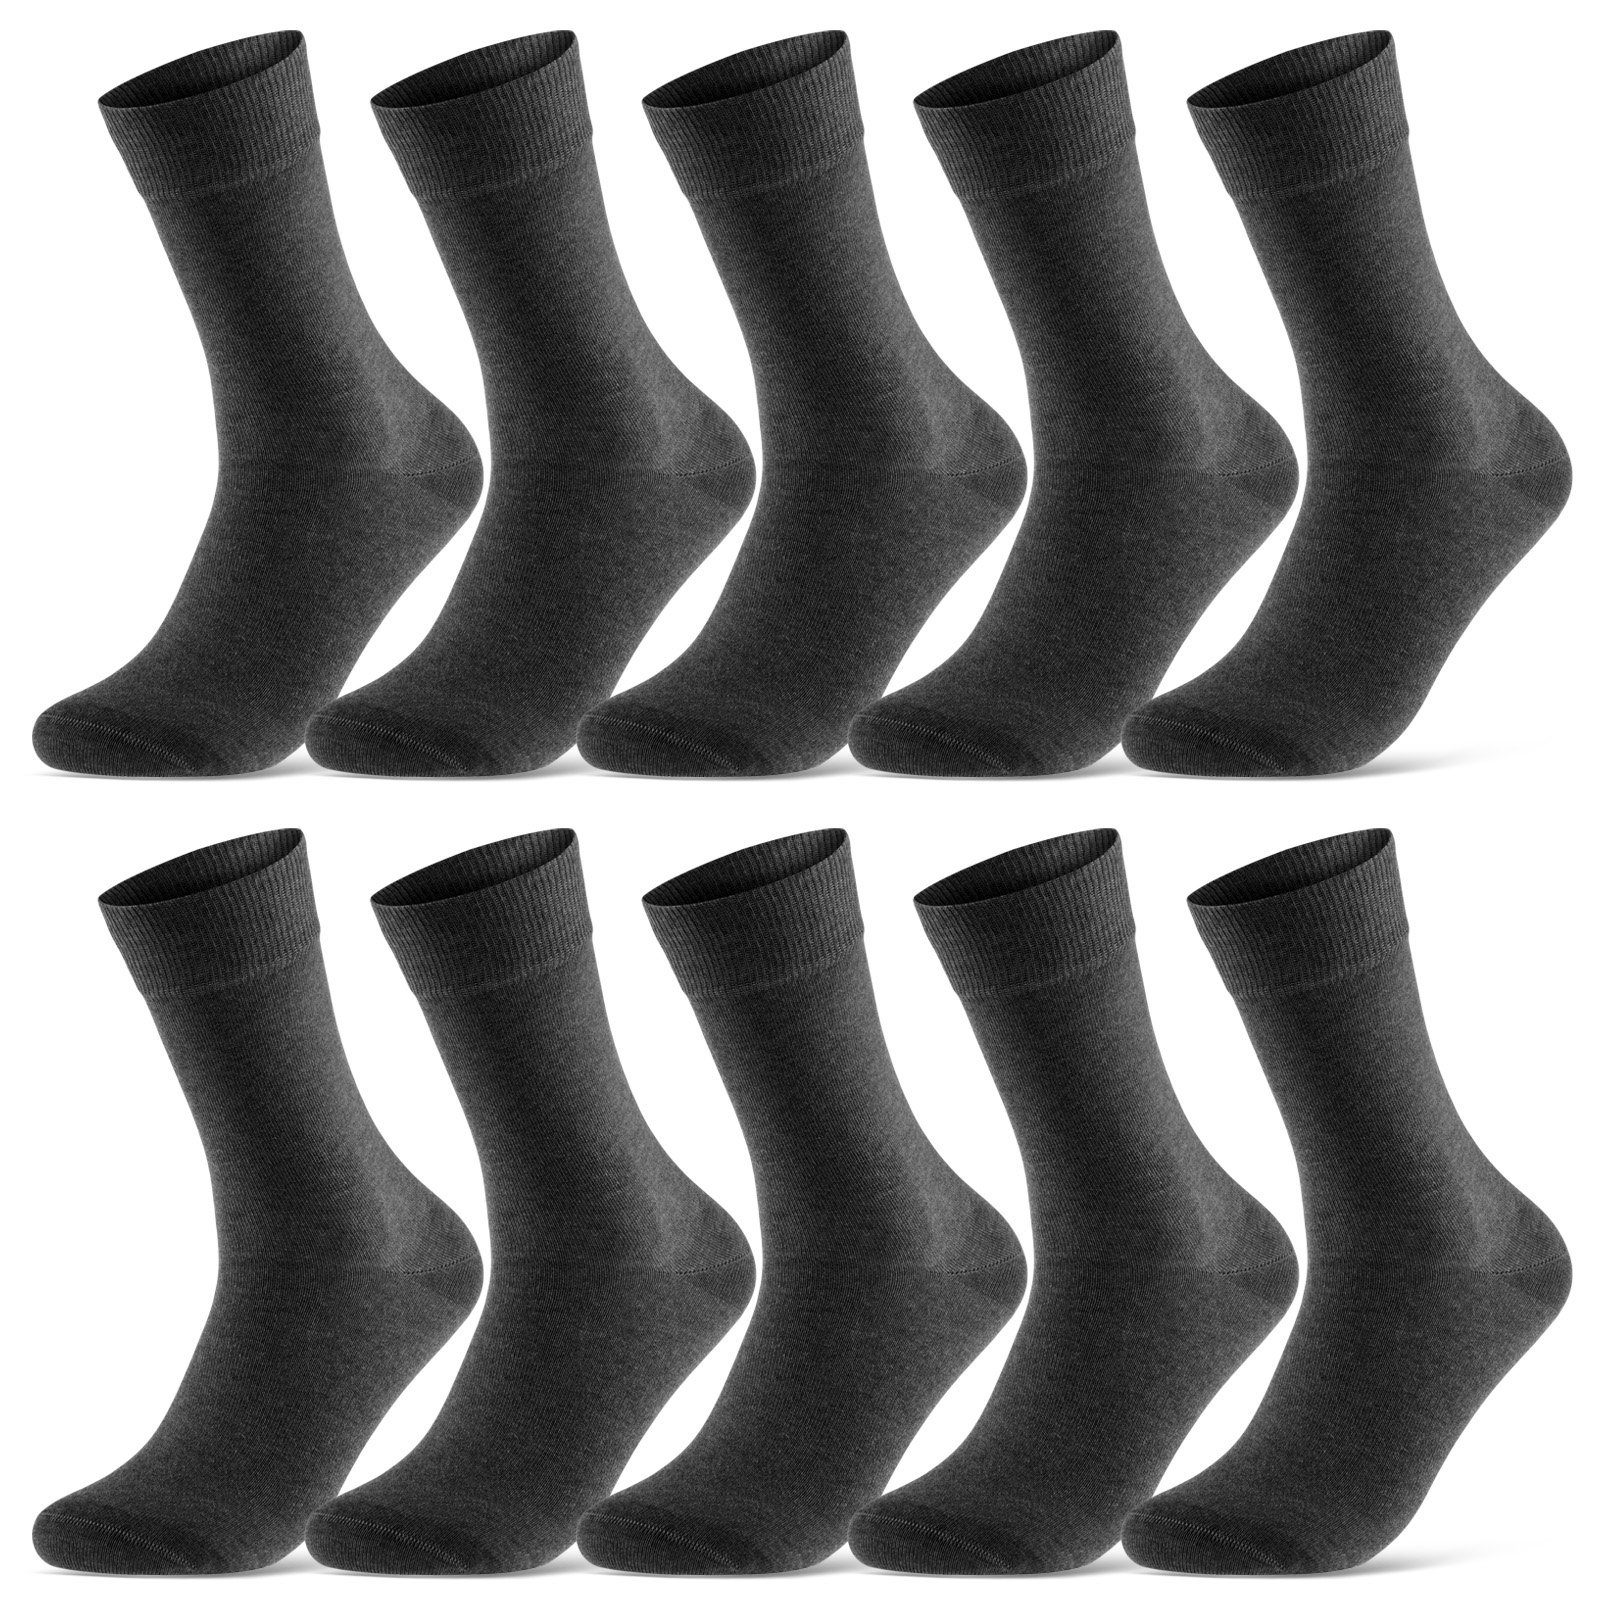 sockenkauf24 Socken 10 Paar Damen & Herren Socken Business Socken Baumwolle (Anthrazit, 39-42) mit Komfortbund (Basicline) - 70201T WP | Lange Socken